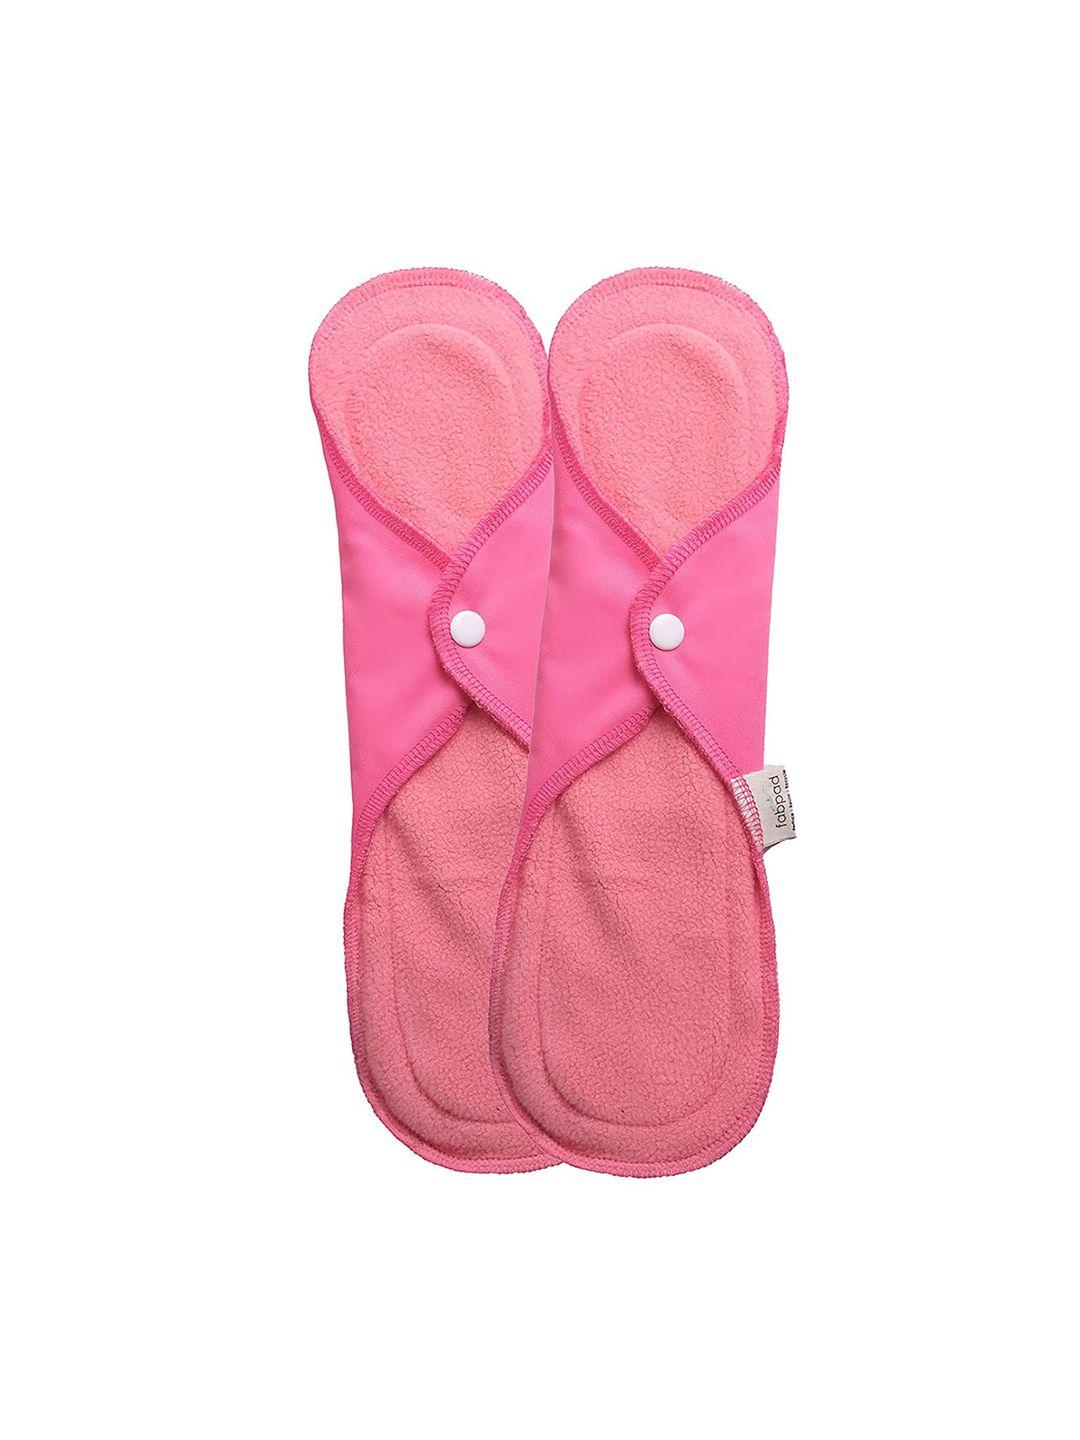 fabpad set of reusable washable day & night sanitary cloth pad napkins